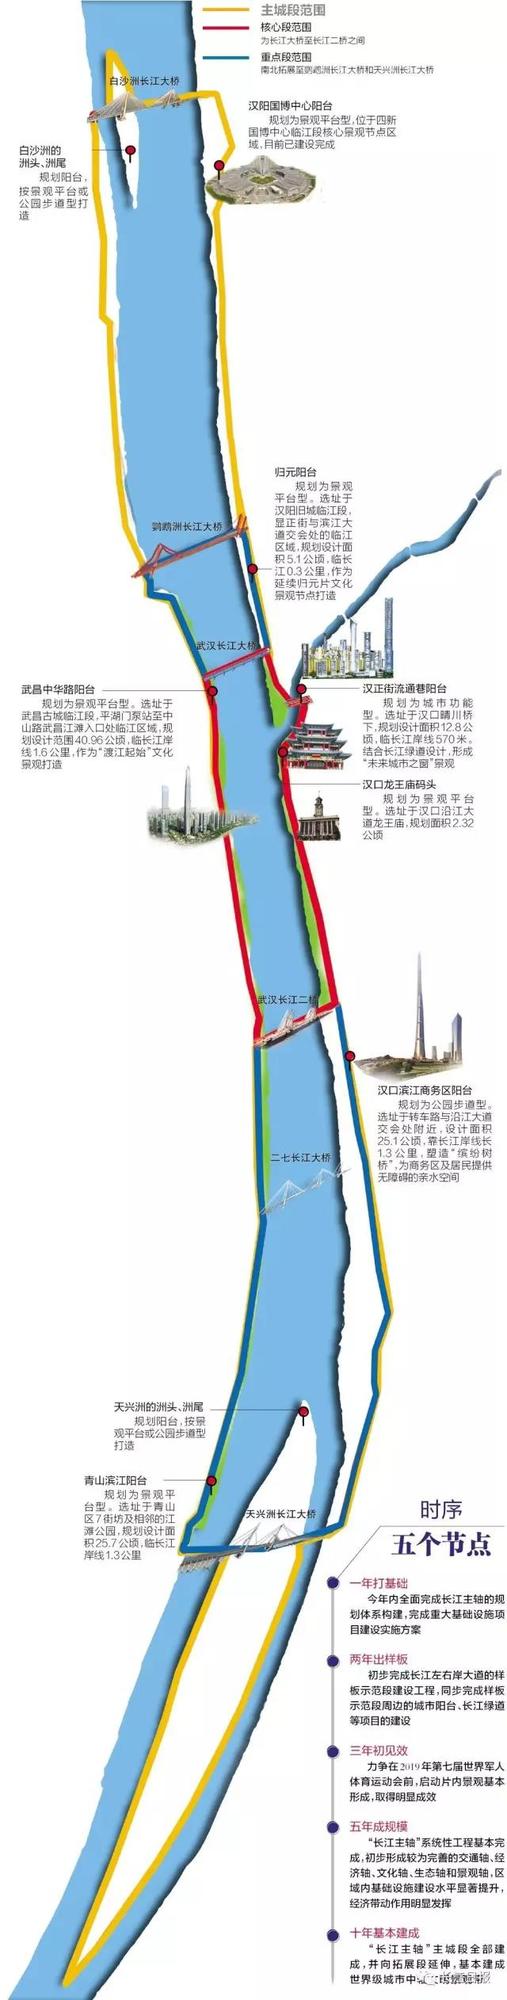 根据方案,武汉长江主轴核心段范围在长江大桥至长江二桥之间,重点段图片